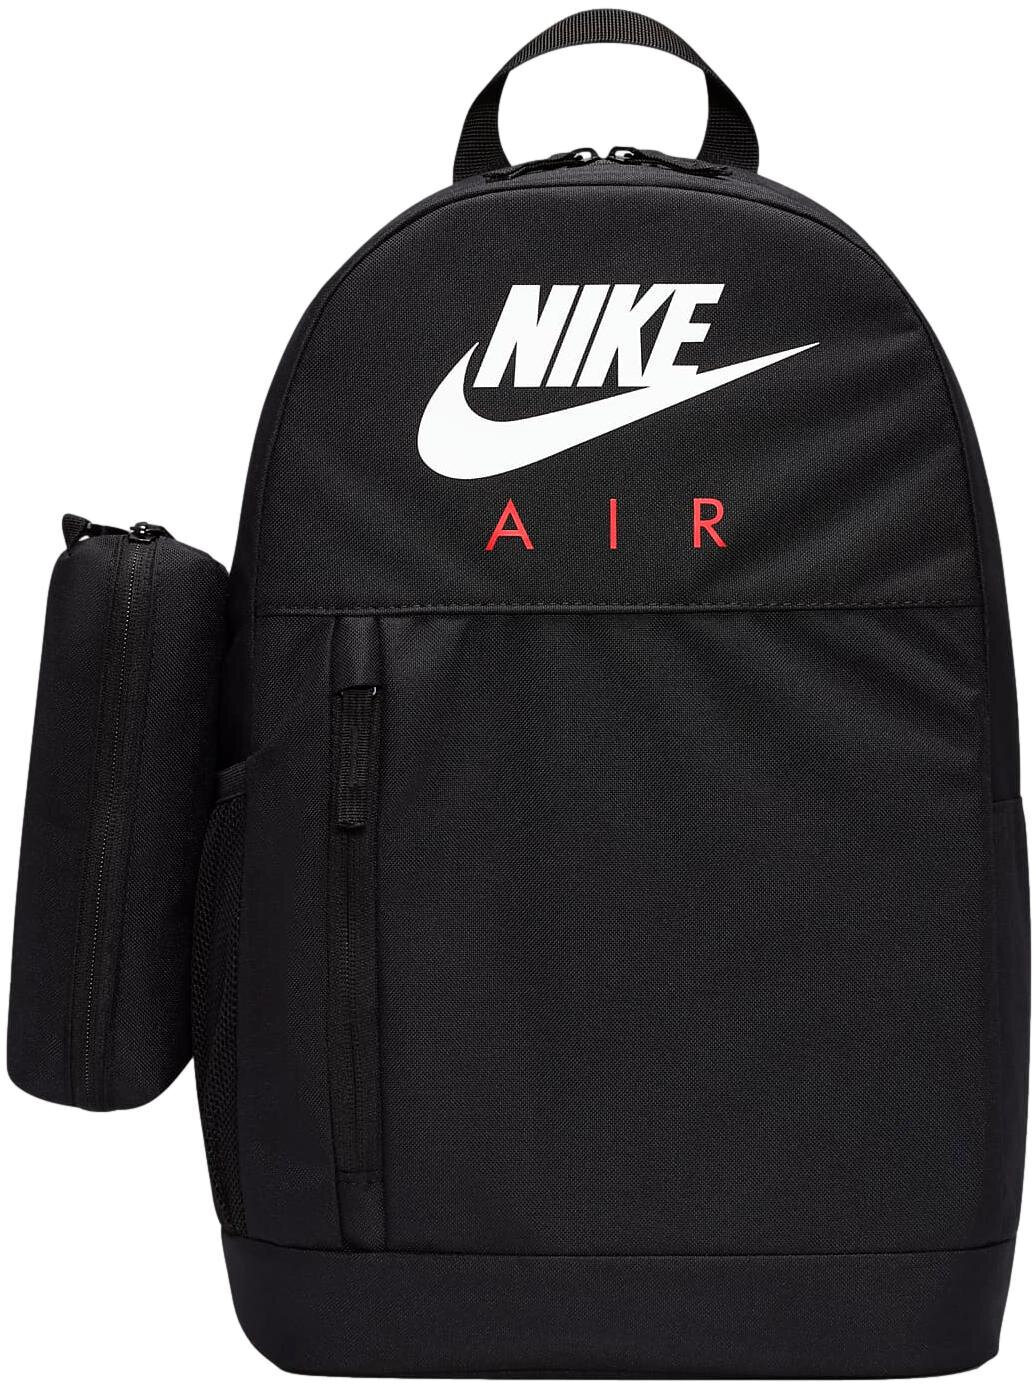 Kuprinė Nike Retail FD2918 010, 20L, juoda kaina | pigu.lt